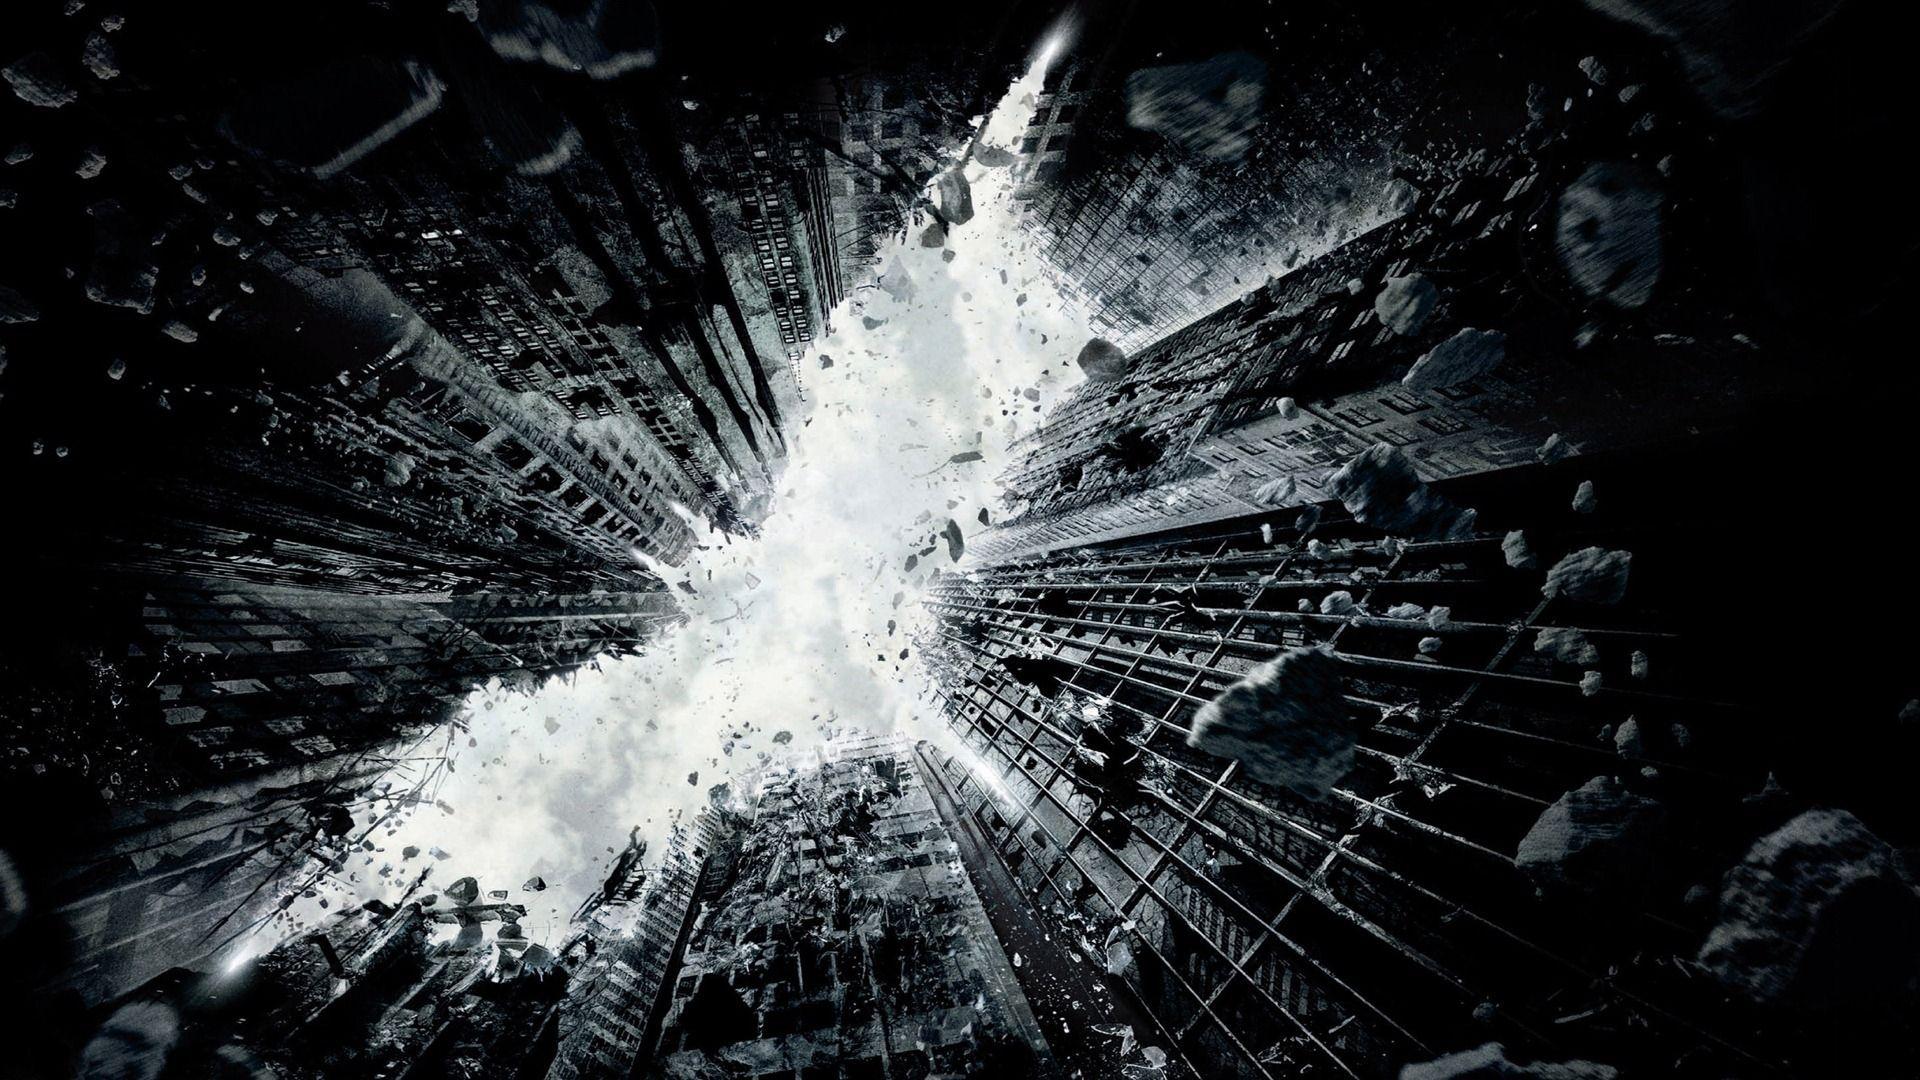 Batman The Dark Knight Rises HD Wallpaper 1920x1080 HD 3D